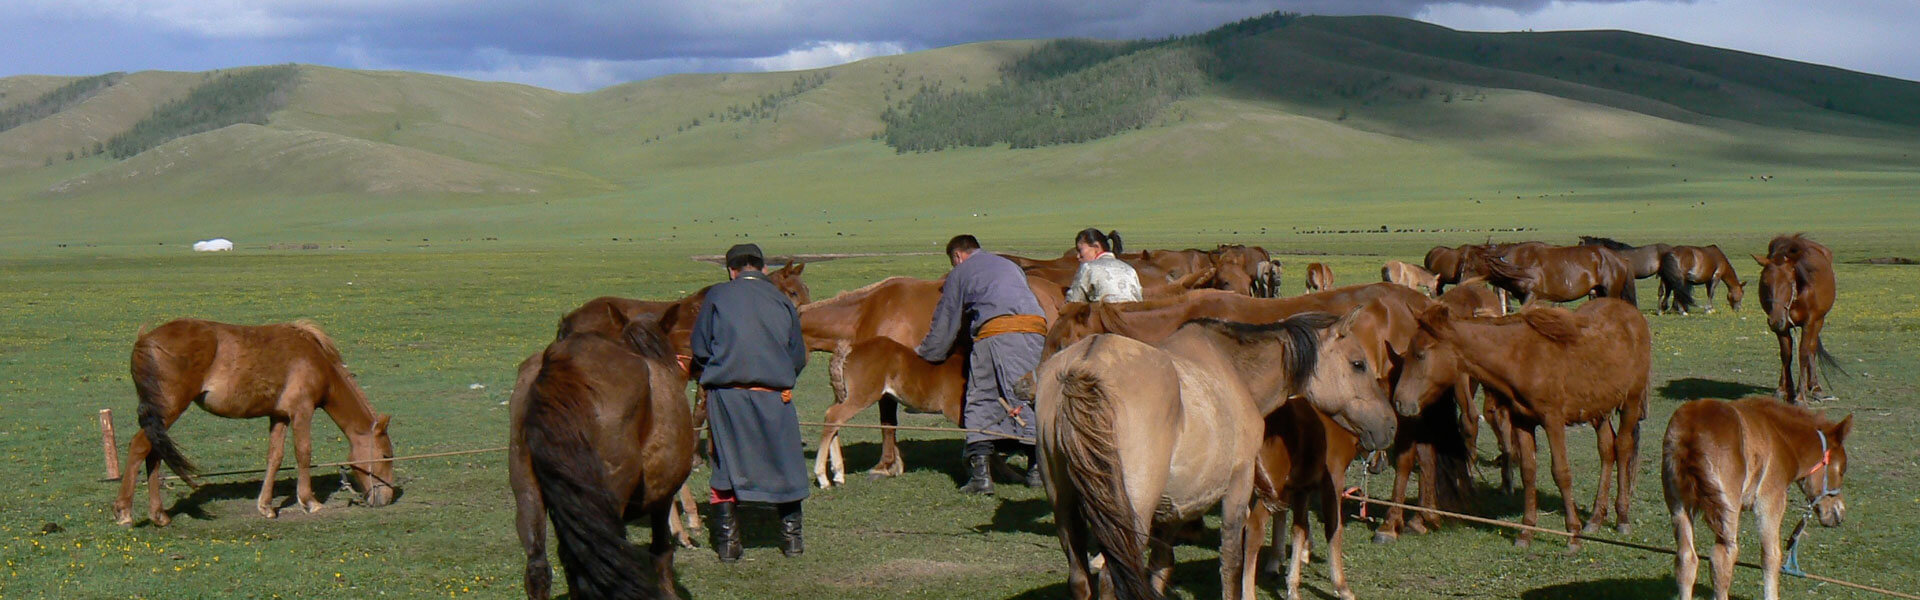 Mongolie Compleet reis